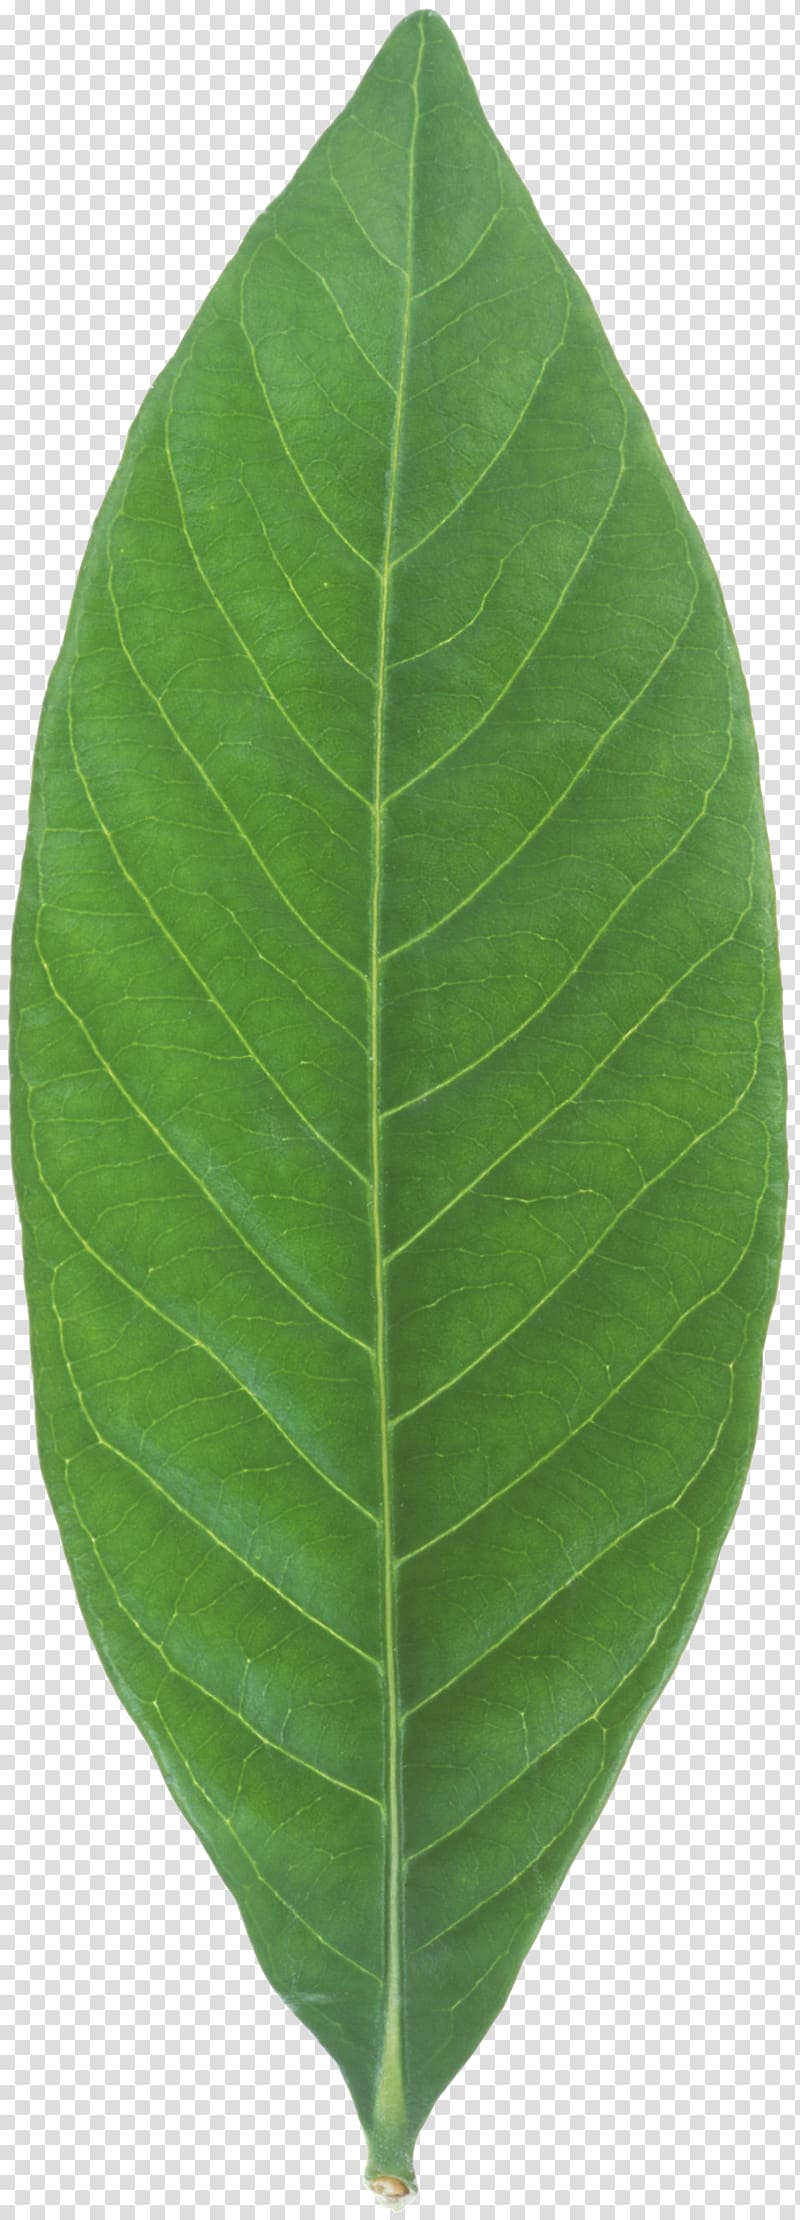 Banana leaf Plant, mint leaf transparent background PNG clipart